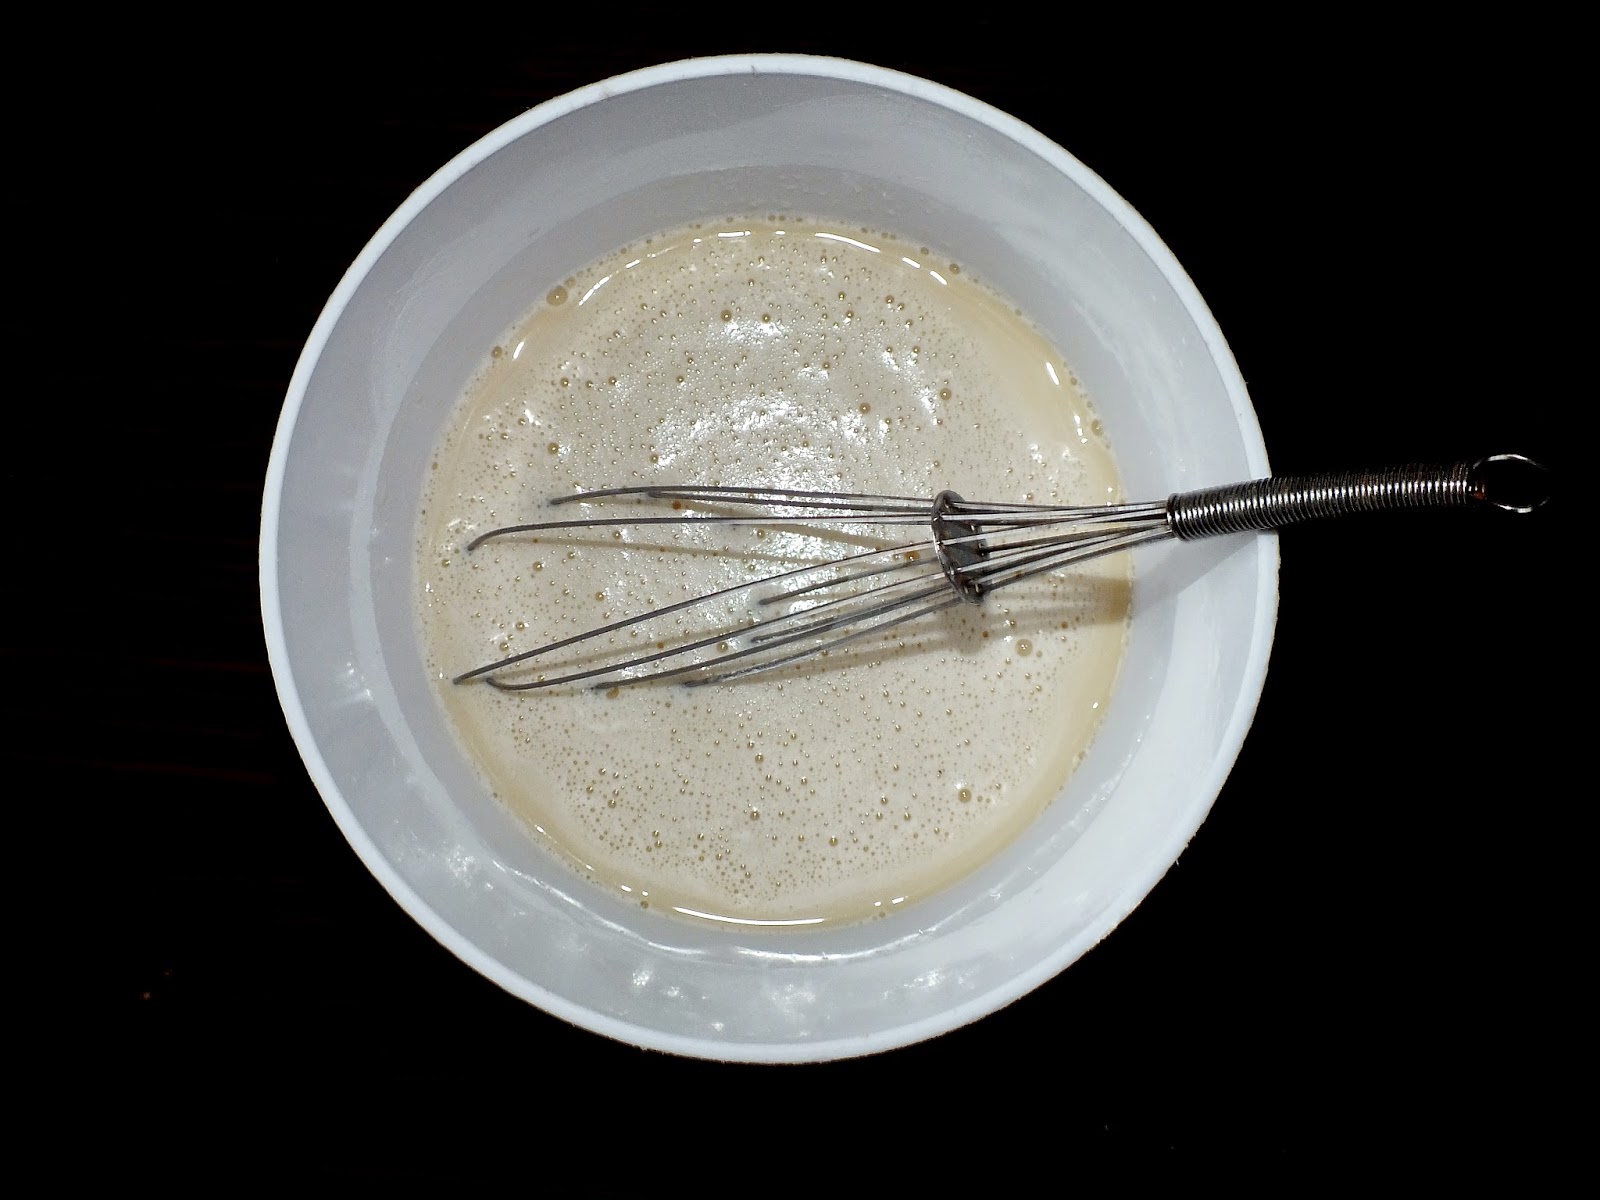 Рецепт крема из рикотты для торта